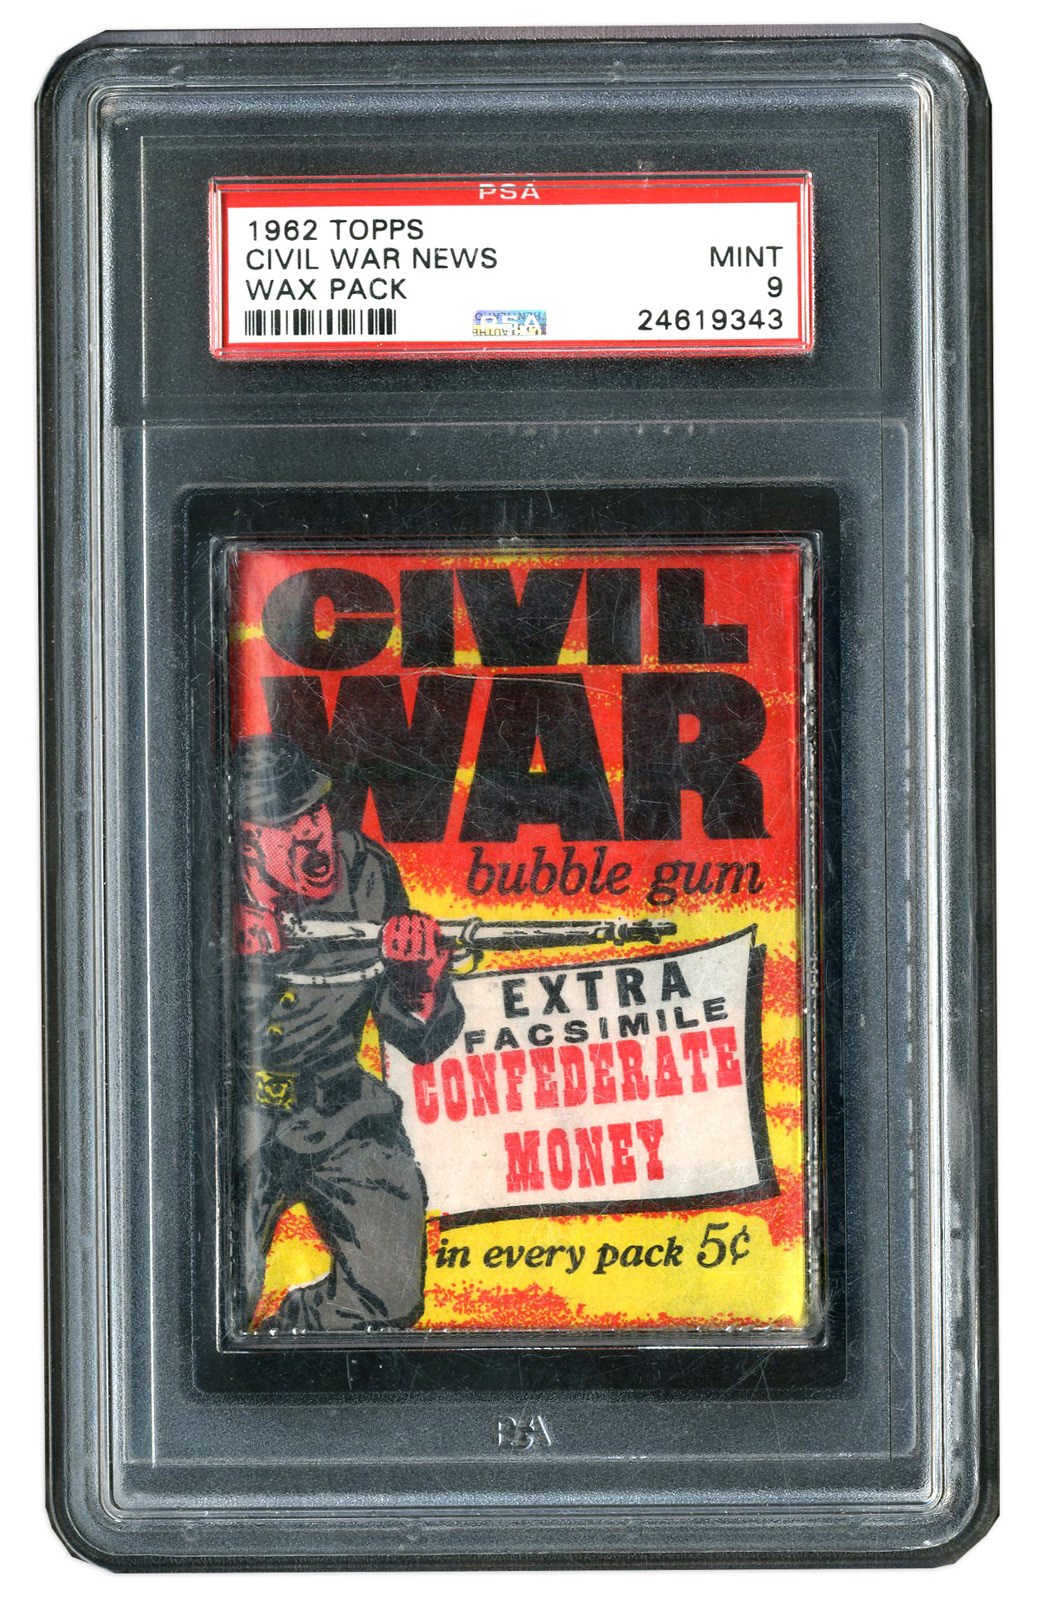 - 1962 Topps Civil War News Unopenend Wax Pack - PSA MINT 9